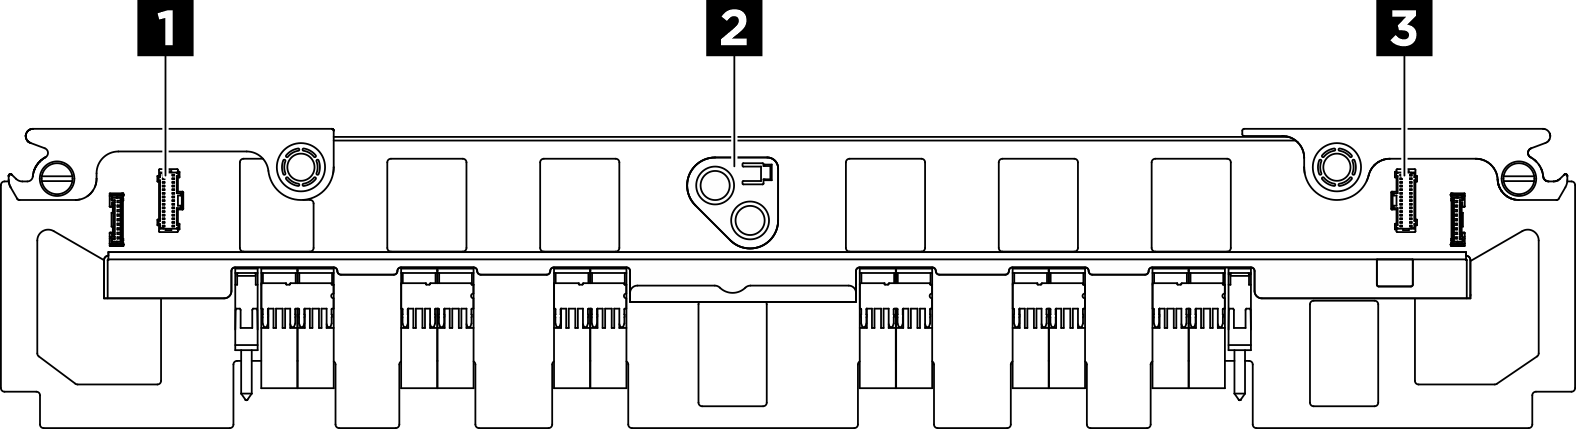 PSU interposer connectors